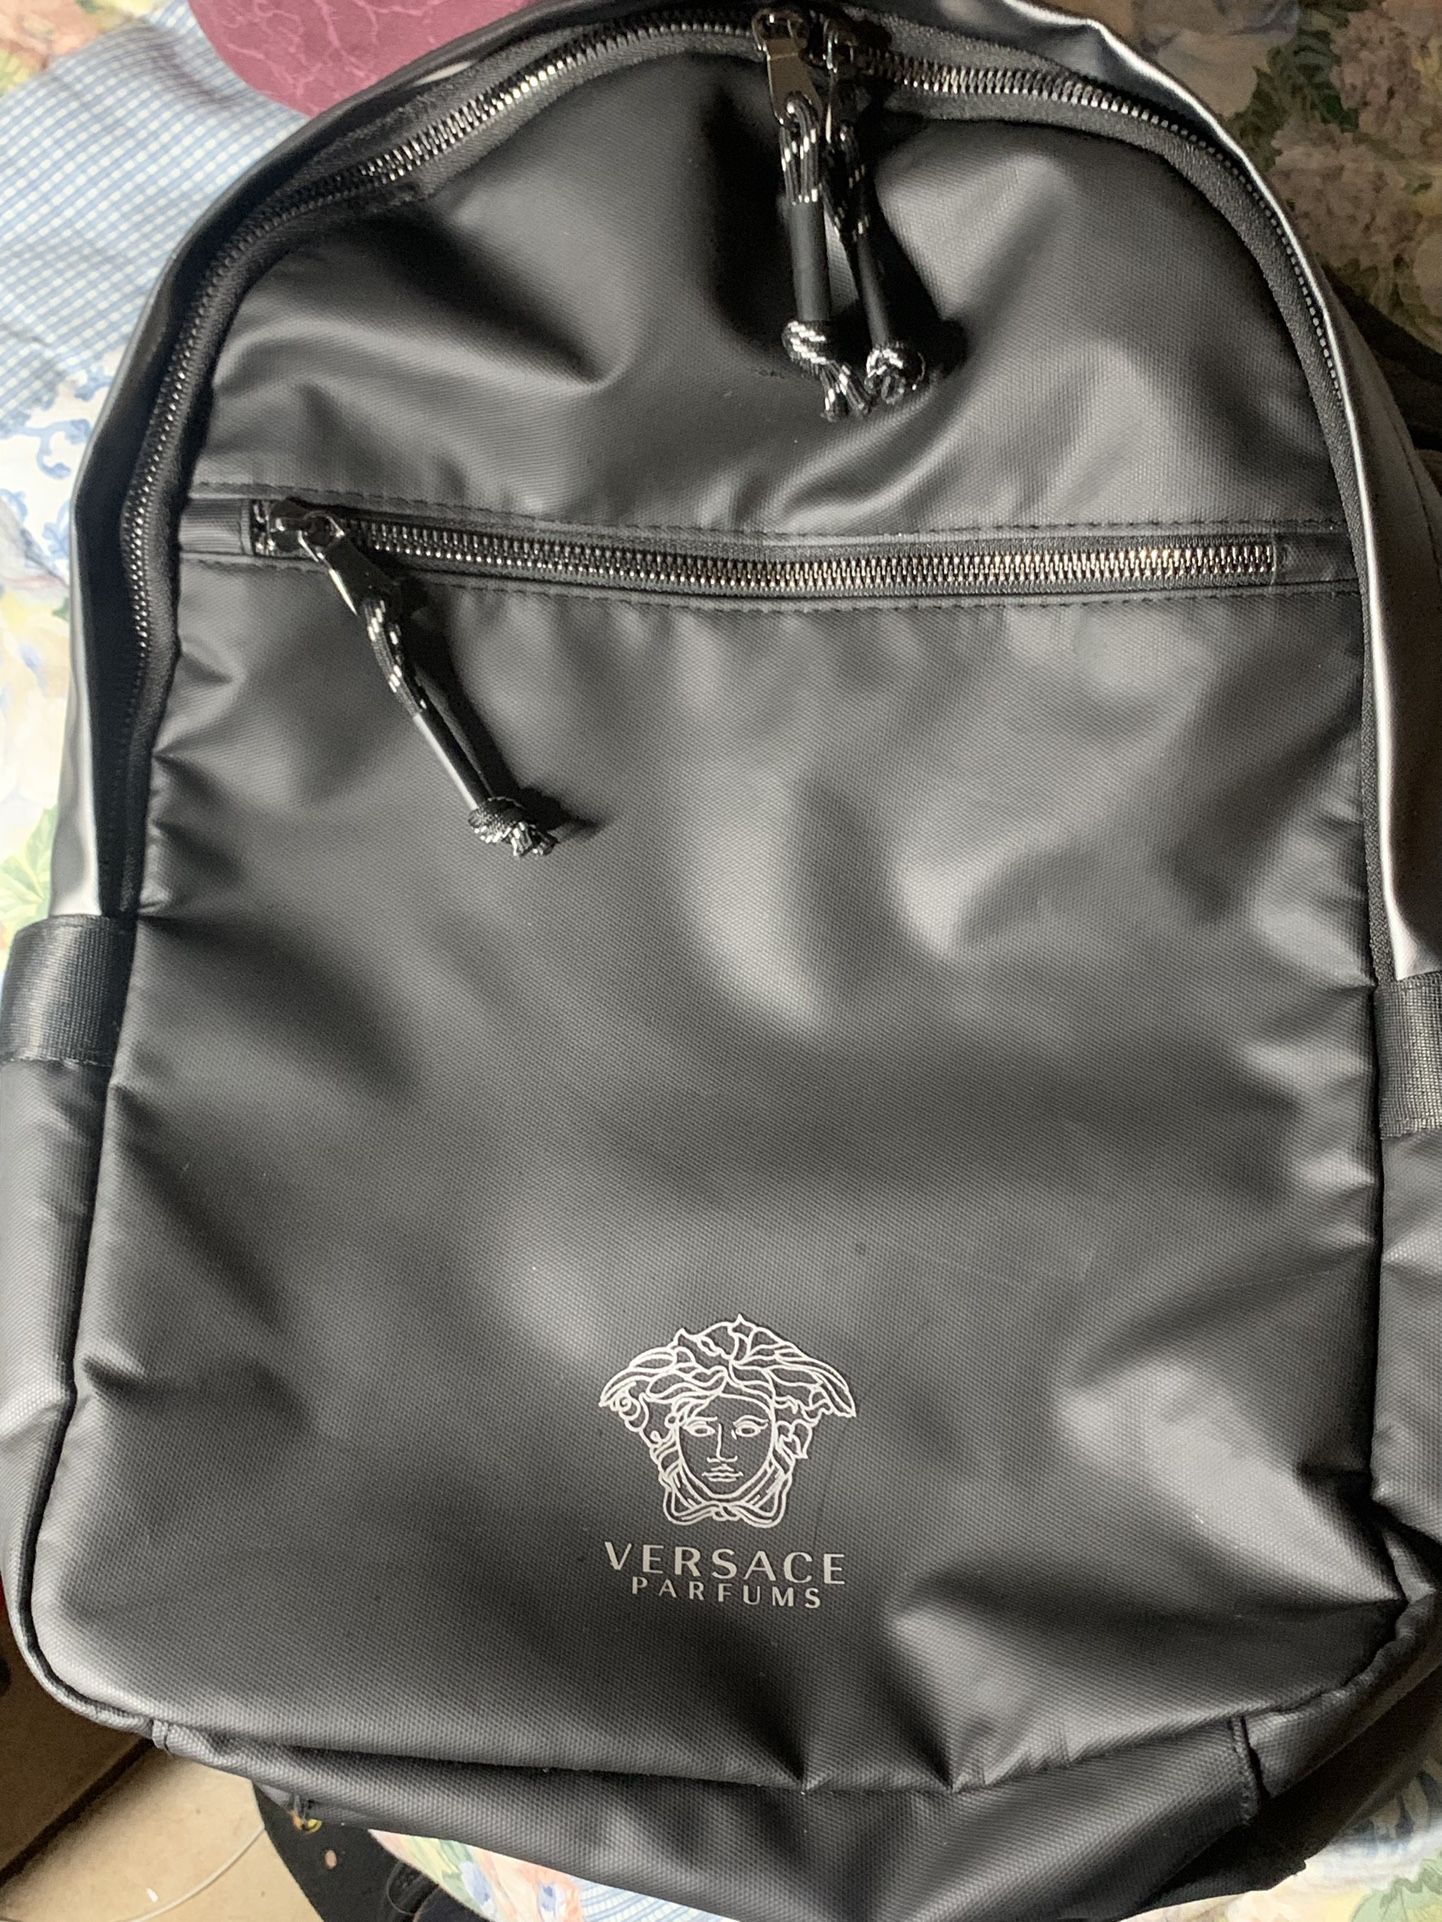 Versace Parfums Backpack 